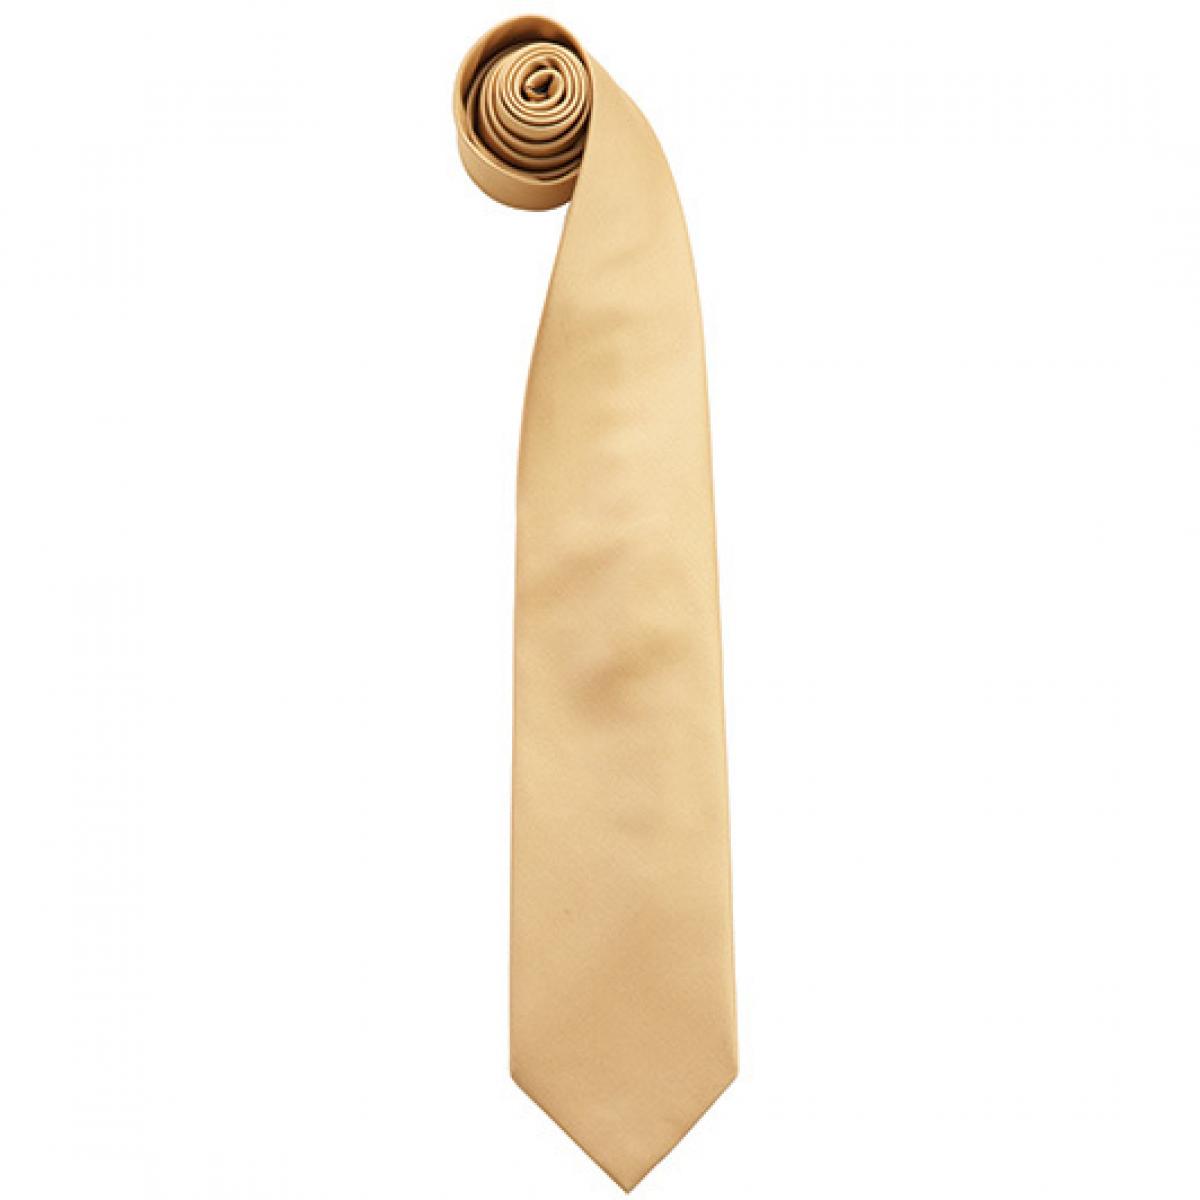 Hersteller: Premier Workwear Herstellernummer: PR765 Artikelbezeichnung: Krawatte Uni-Fashion / Colours Farbe: Gold (ca. Pantone 7499C)